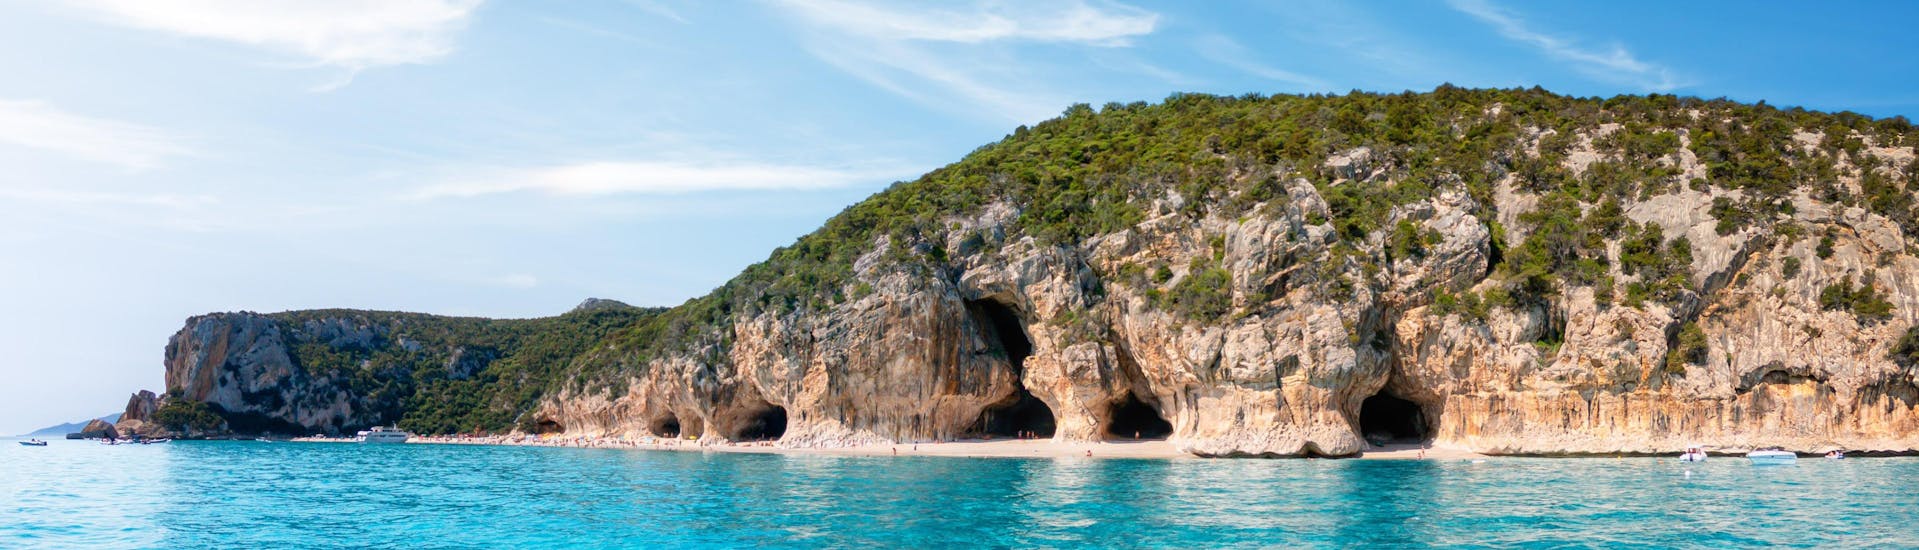 Bild der Höhlen an der Küste von Cala Luna, Sardinien, einem beliebten Ziel für Bootsausflüge.